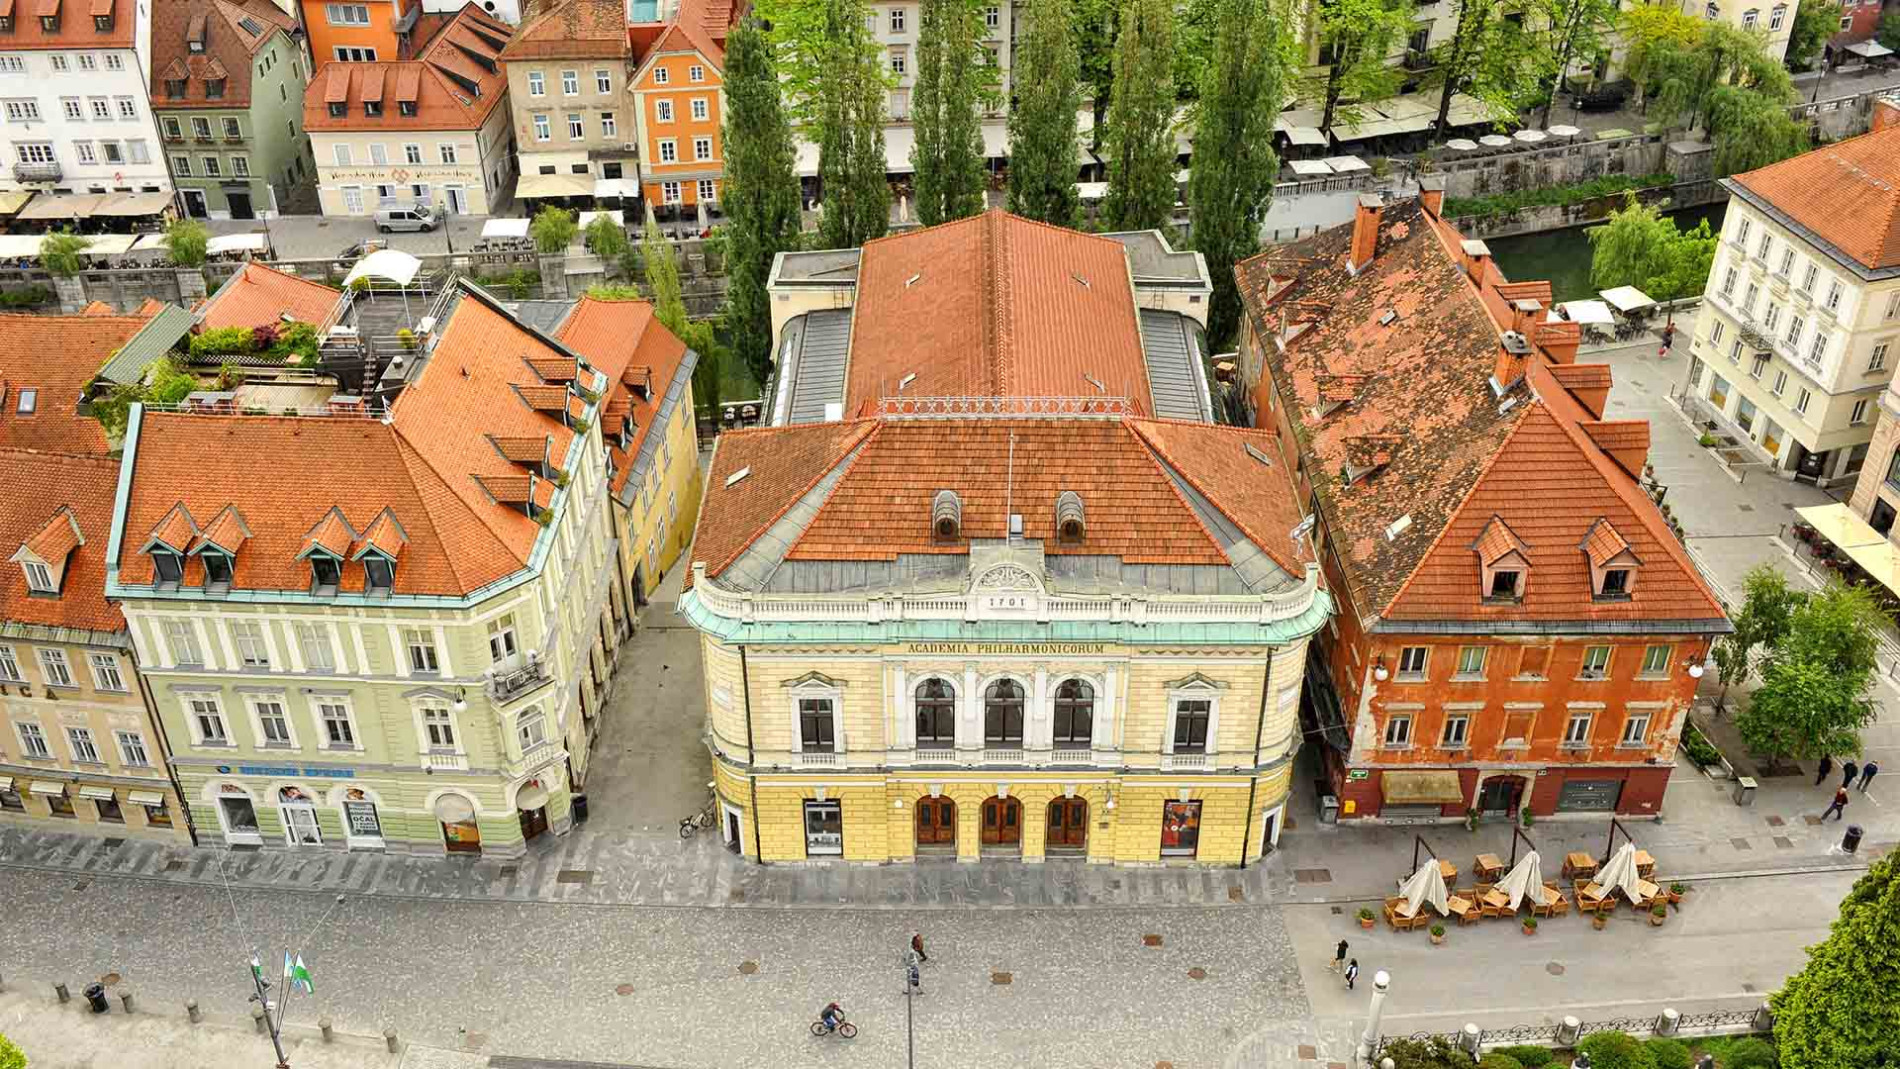 Panoramski pogled na filharmonijo z Ljubljanico v ozadju.